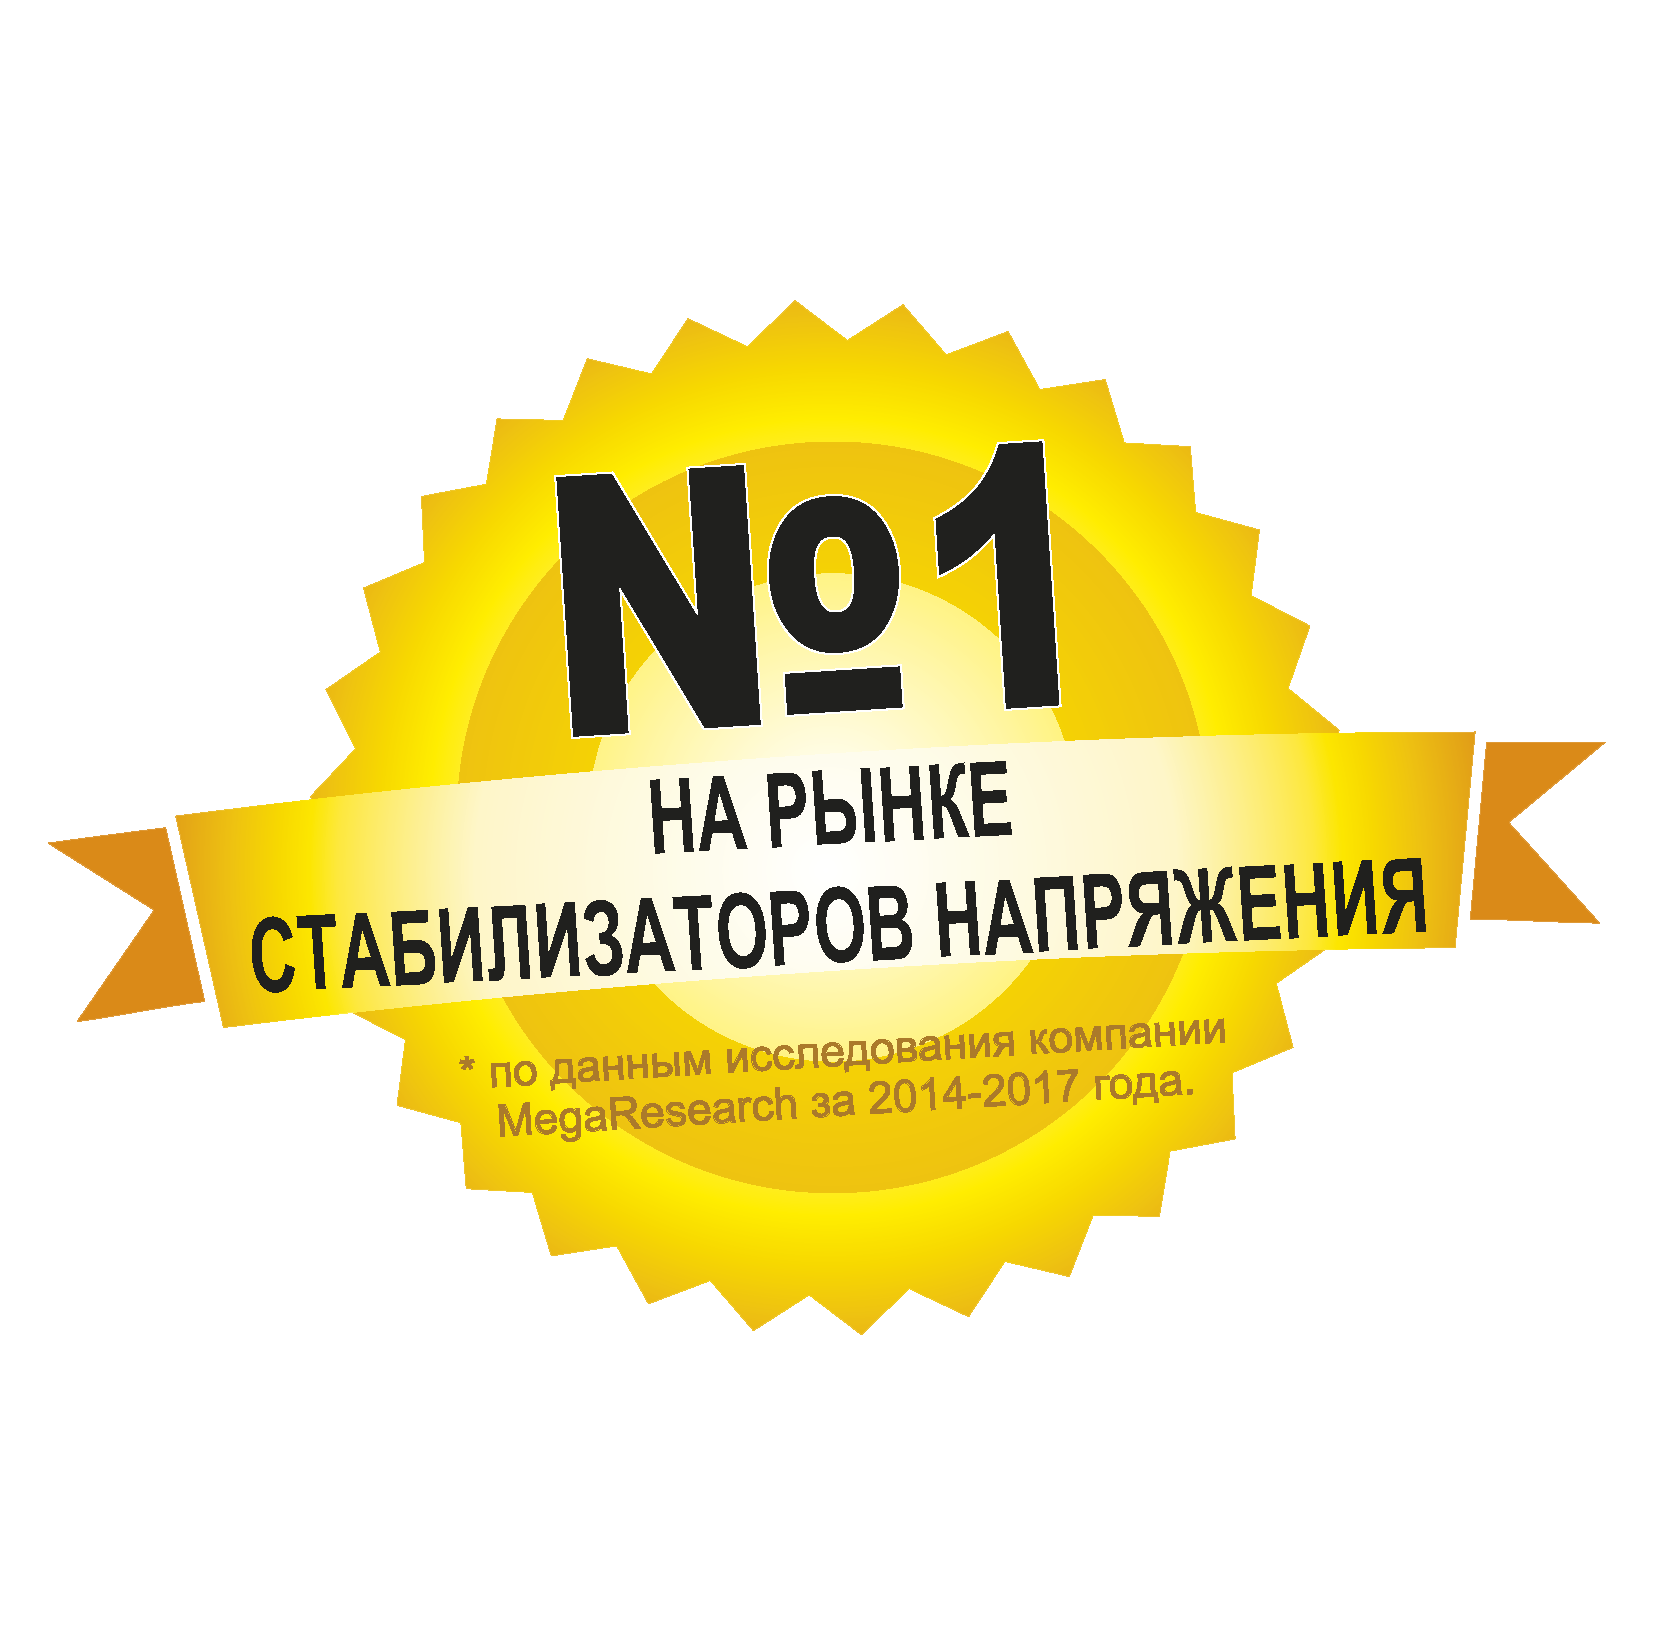 Официальный Сайт Магазина Ижевск